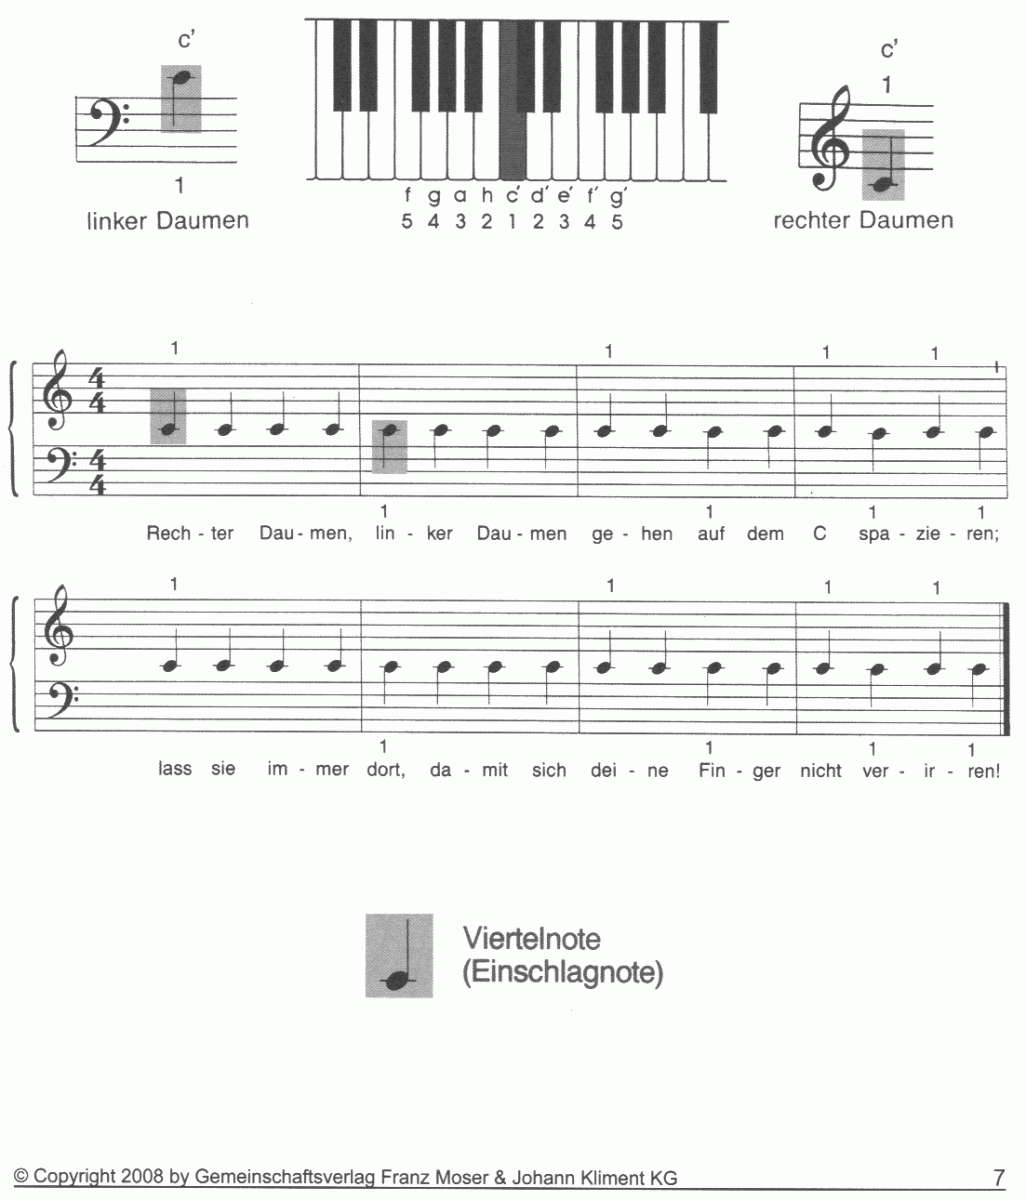 Klavierschule #1 - Sample sheet music